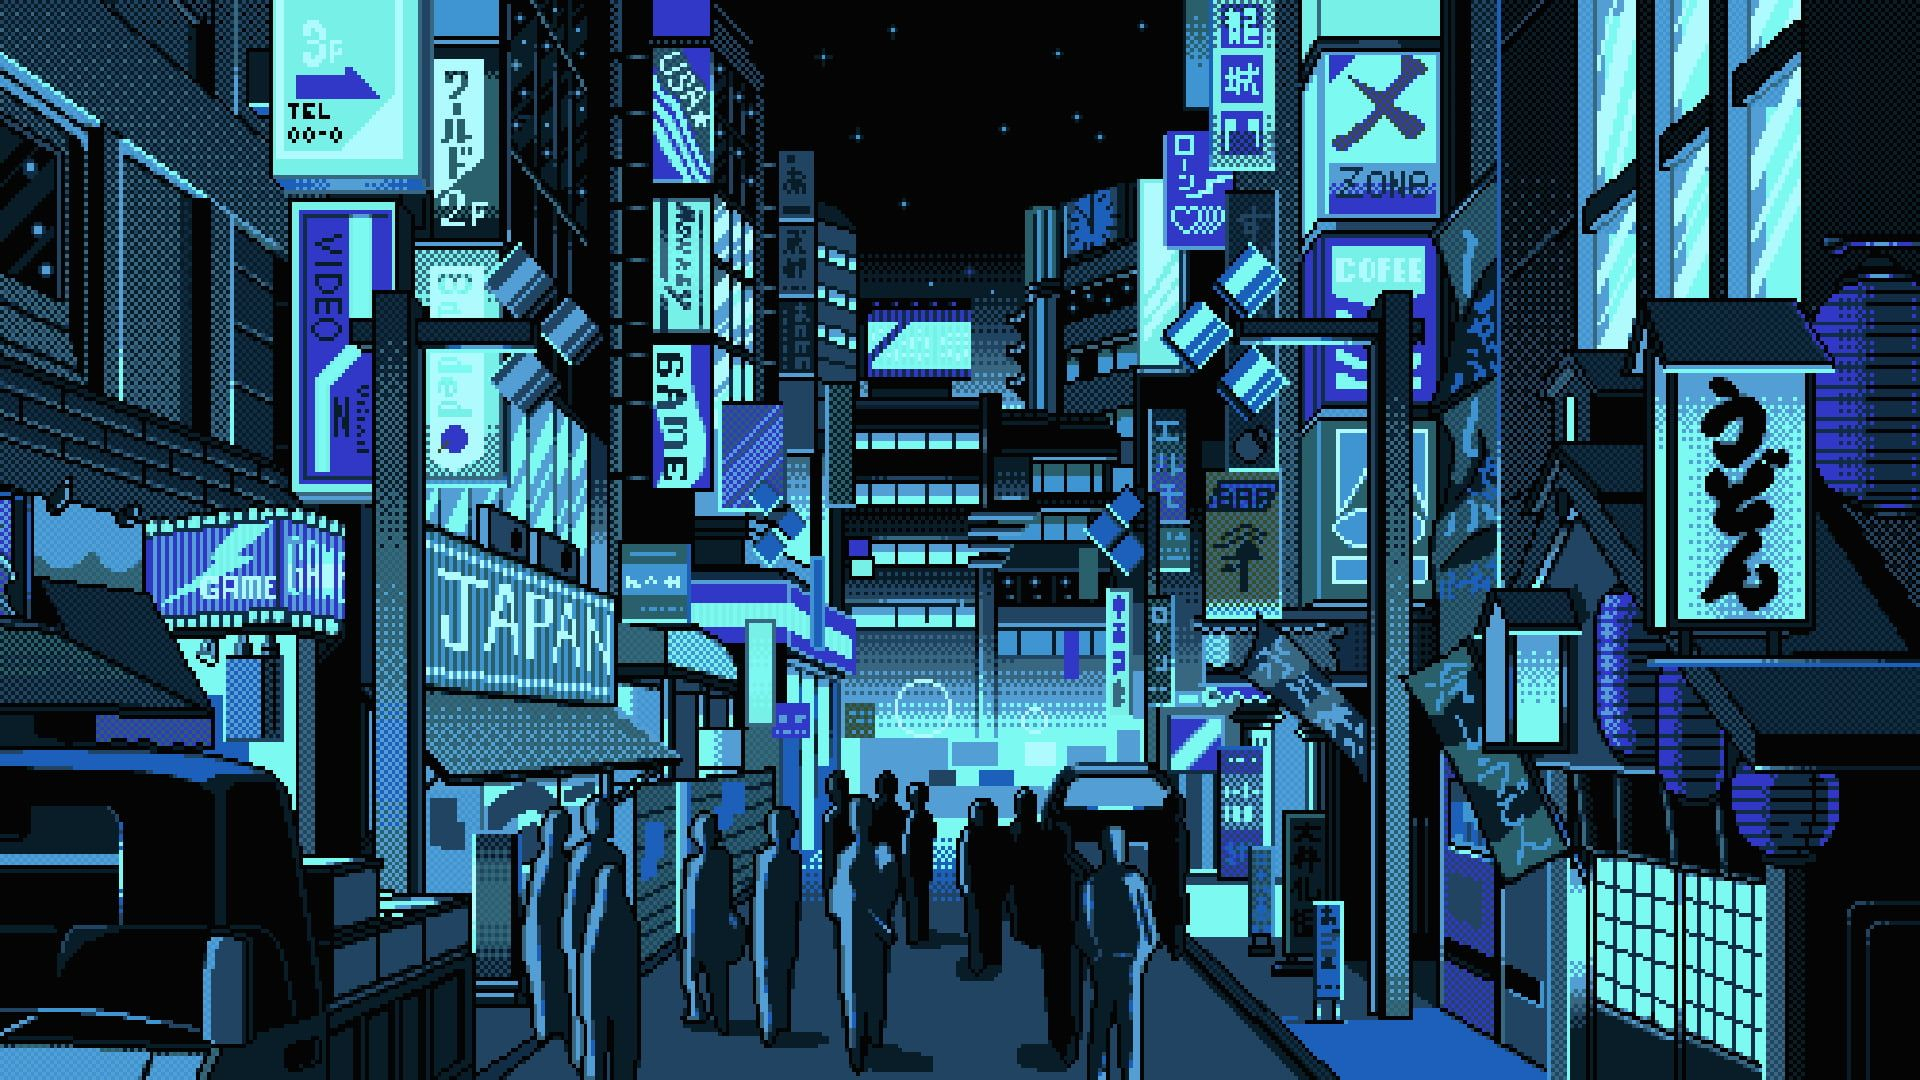 1920x1080 Tokyo Pixel Art Wallpapers Top Free Tokyo Pixel Art Backgrounds